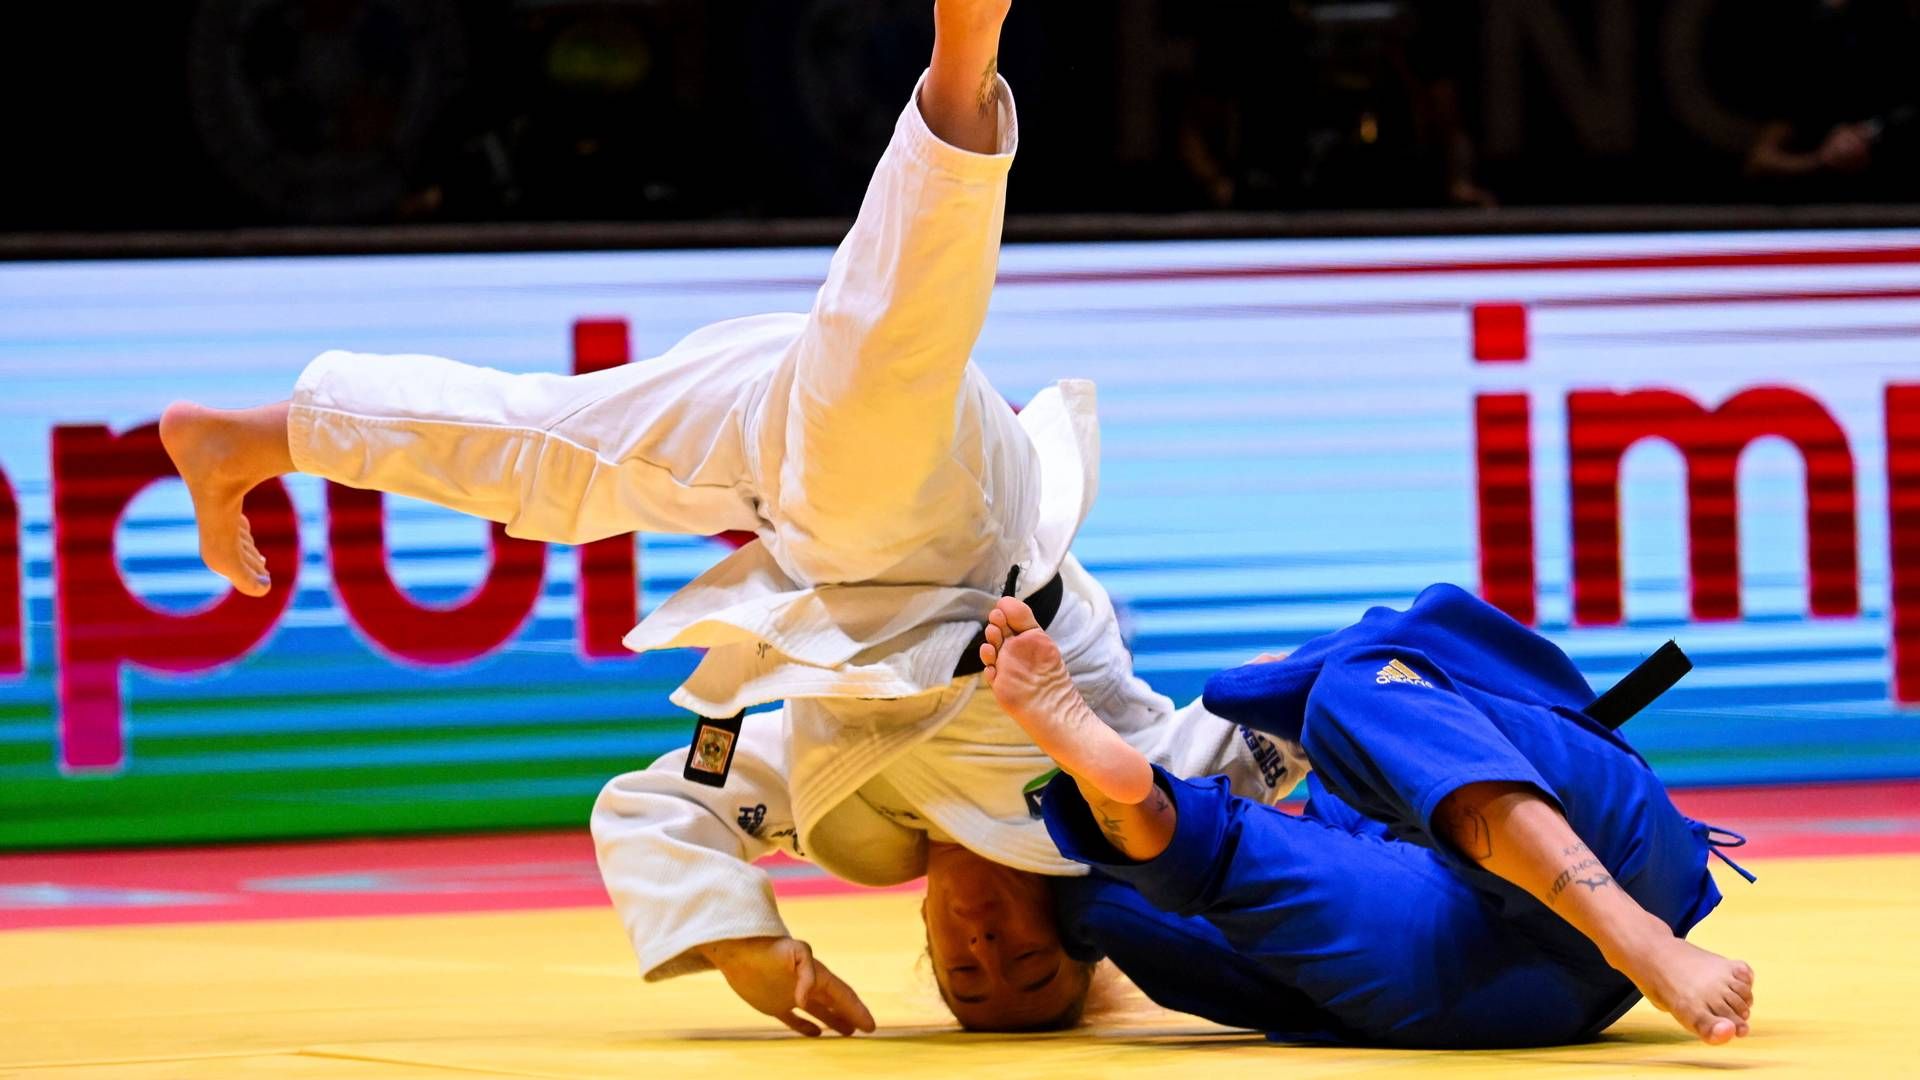 REDDET: Den Brasiliansk jiu-jitsu turneringen kunne gå som planlagt etter gaven fra Sparebanken Øst | Foto: Tibor Illyes/NTB